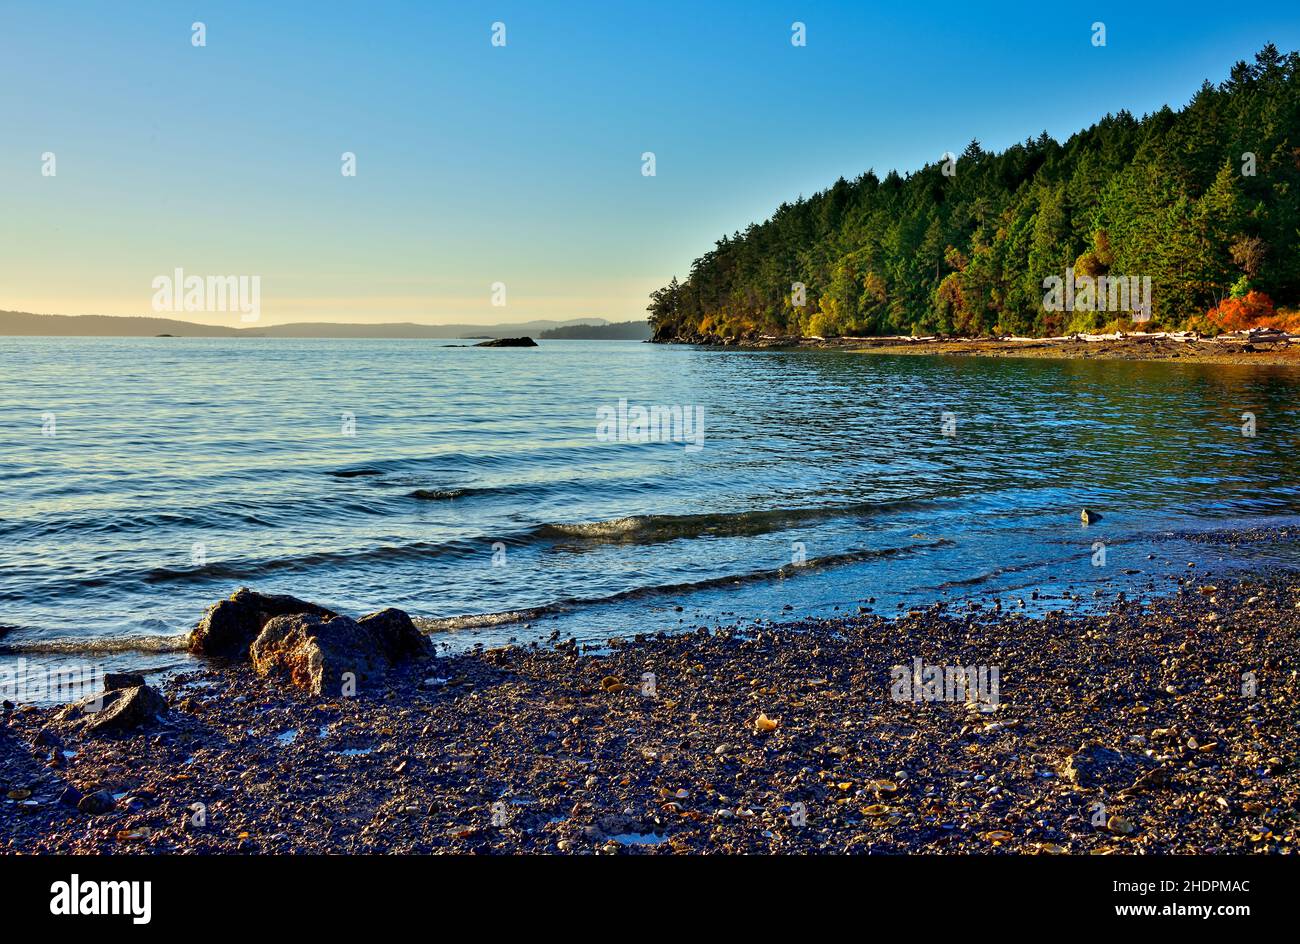 Una hermosa playa en la costa este de la isla de Vancouver en British Columbia Canadá Foto de stock